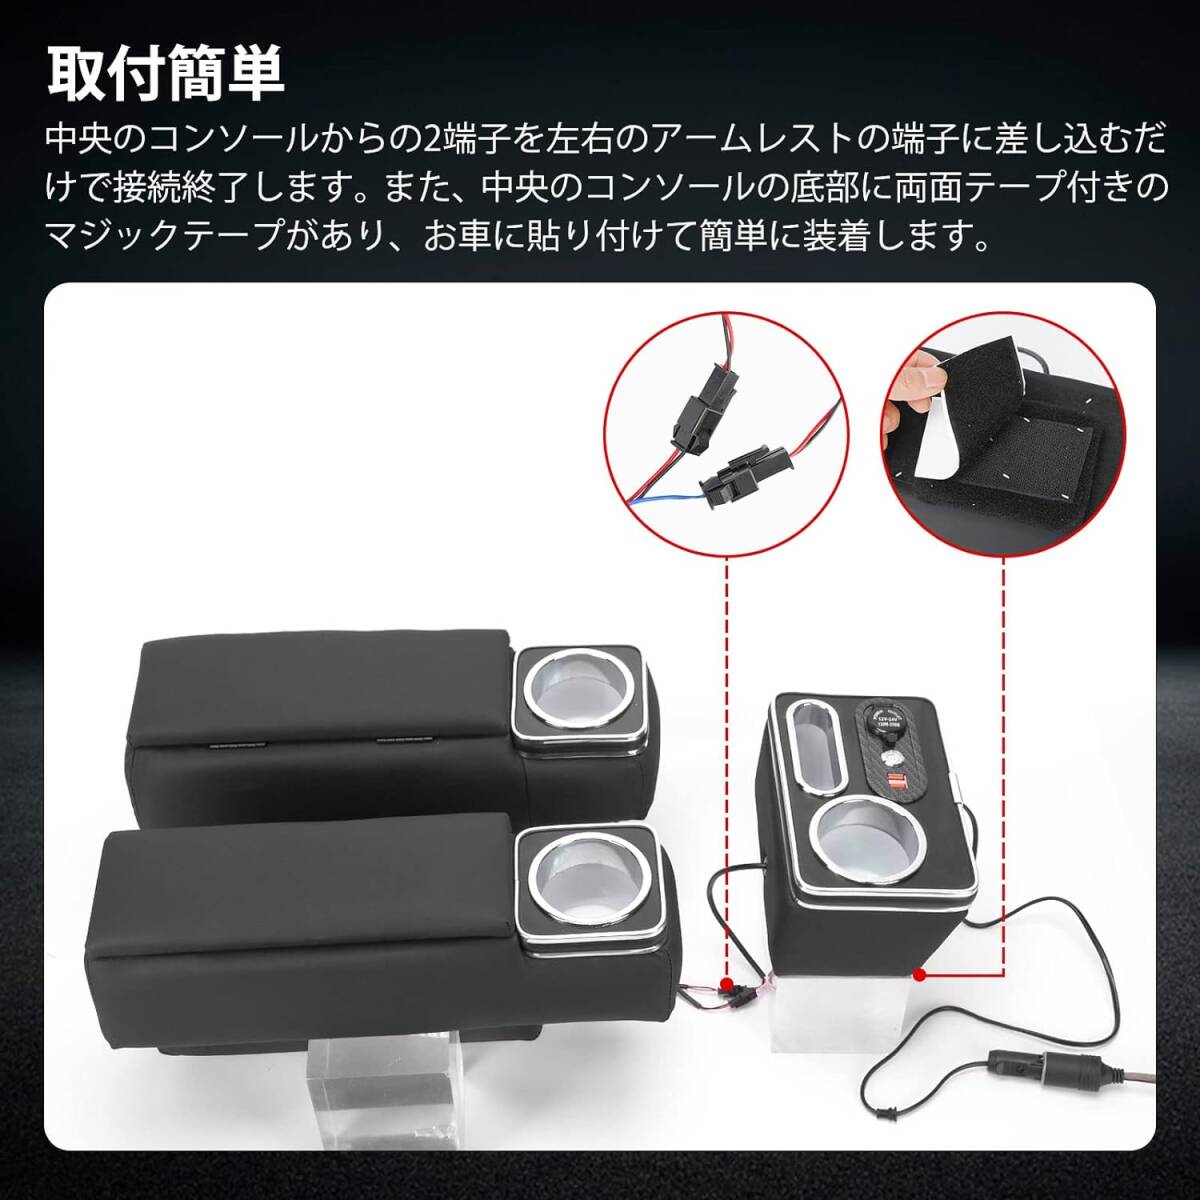 ハイエース 200系 アームレスト コンソールボックス 肘置き LED レザー USBポート シガーケット 3個セット 運転席を自分好みにカスタマイズ